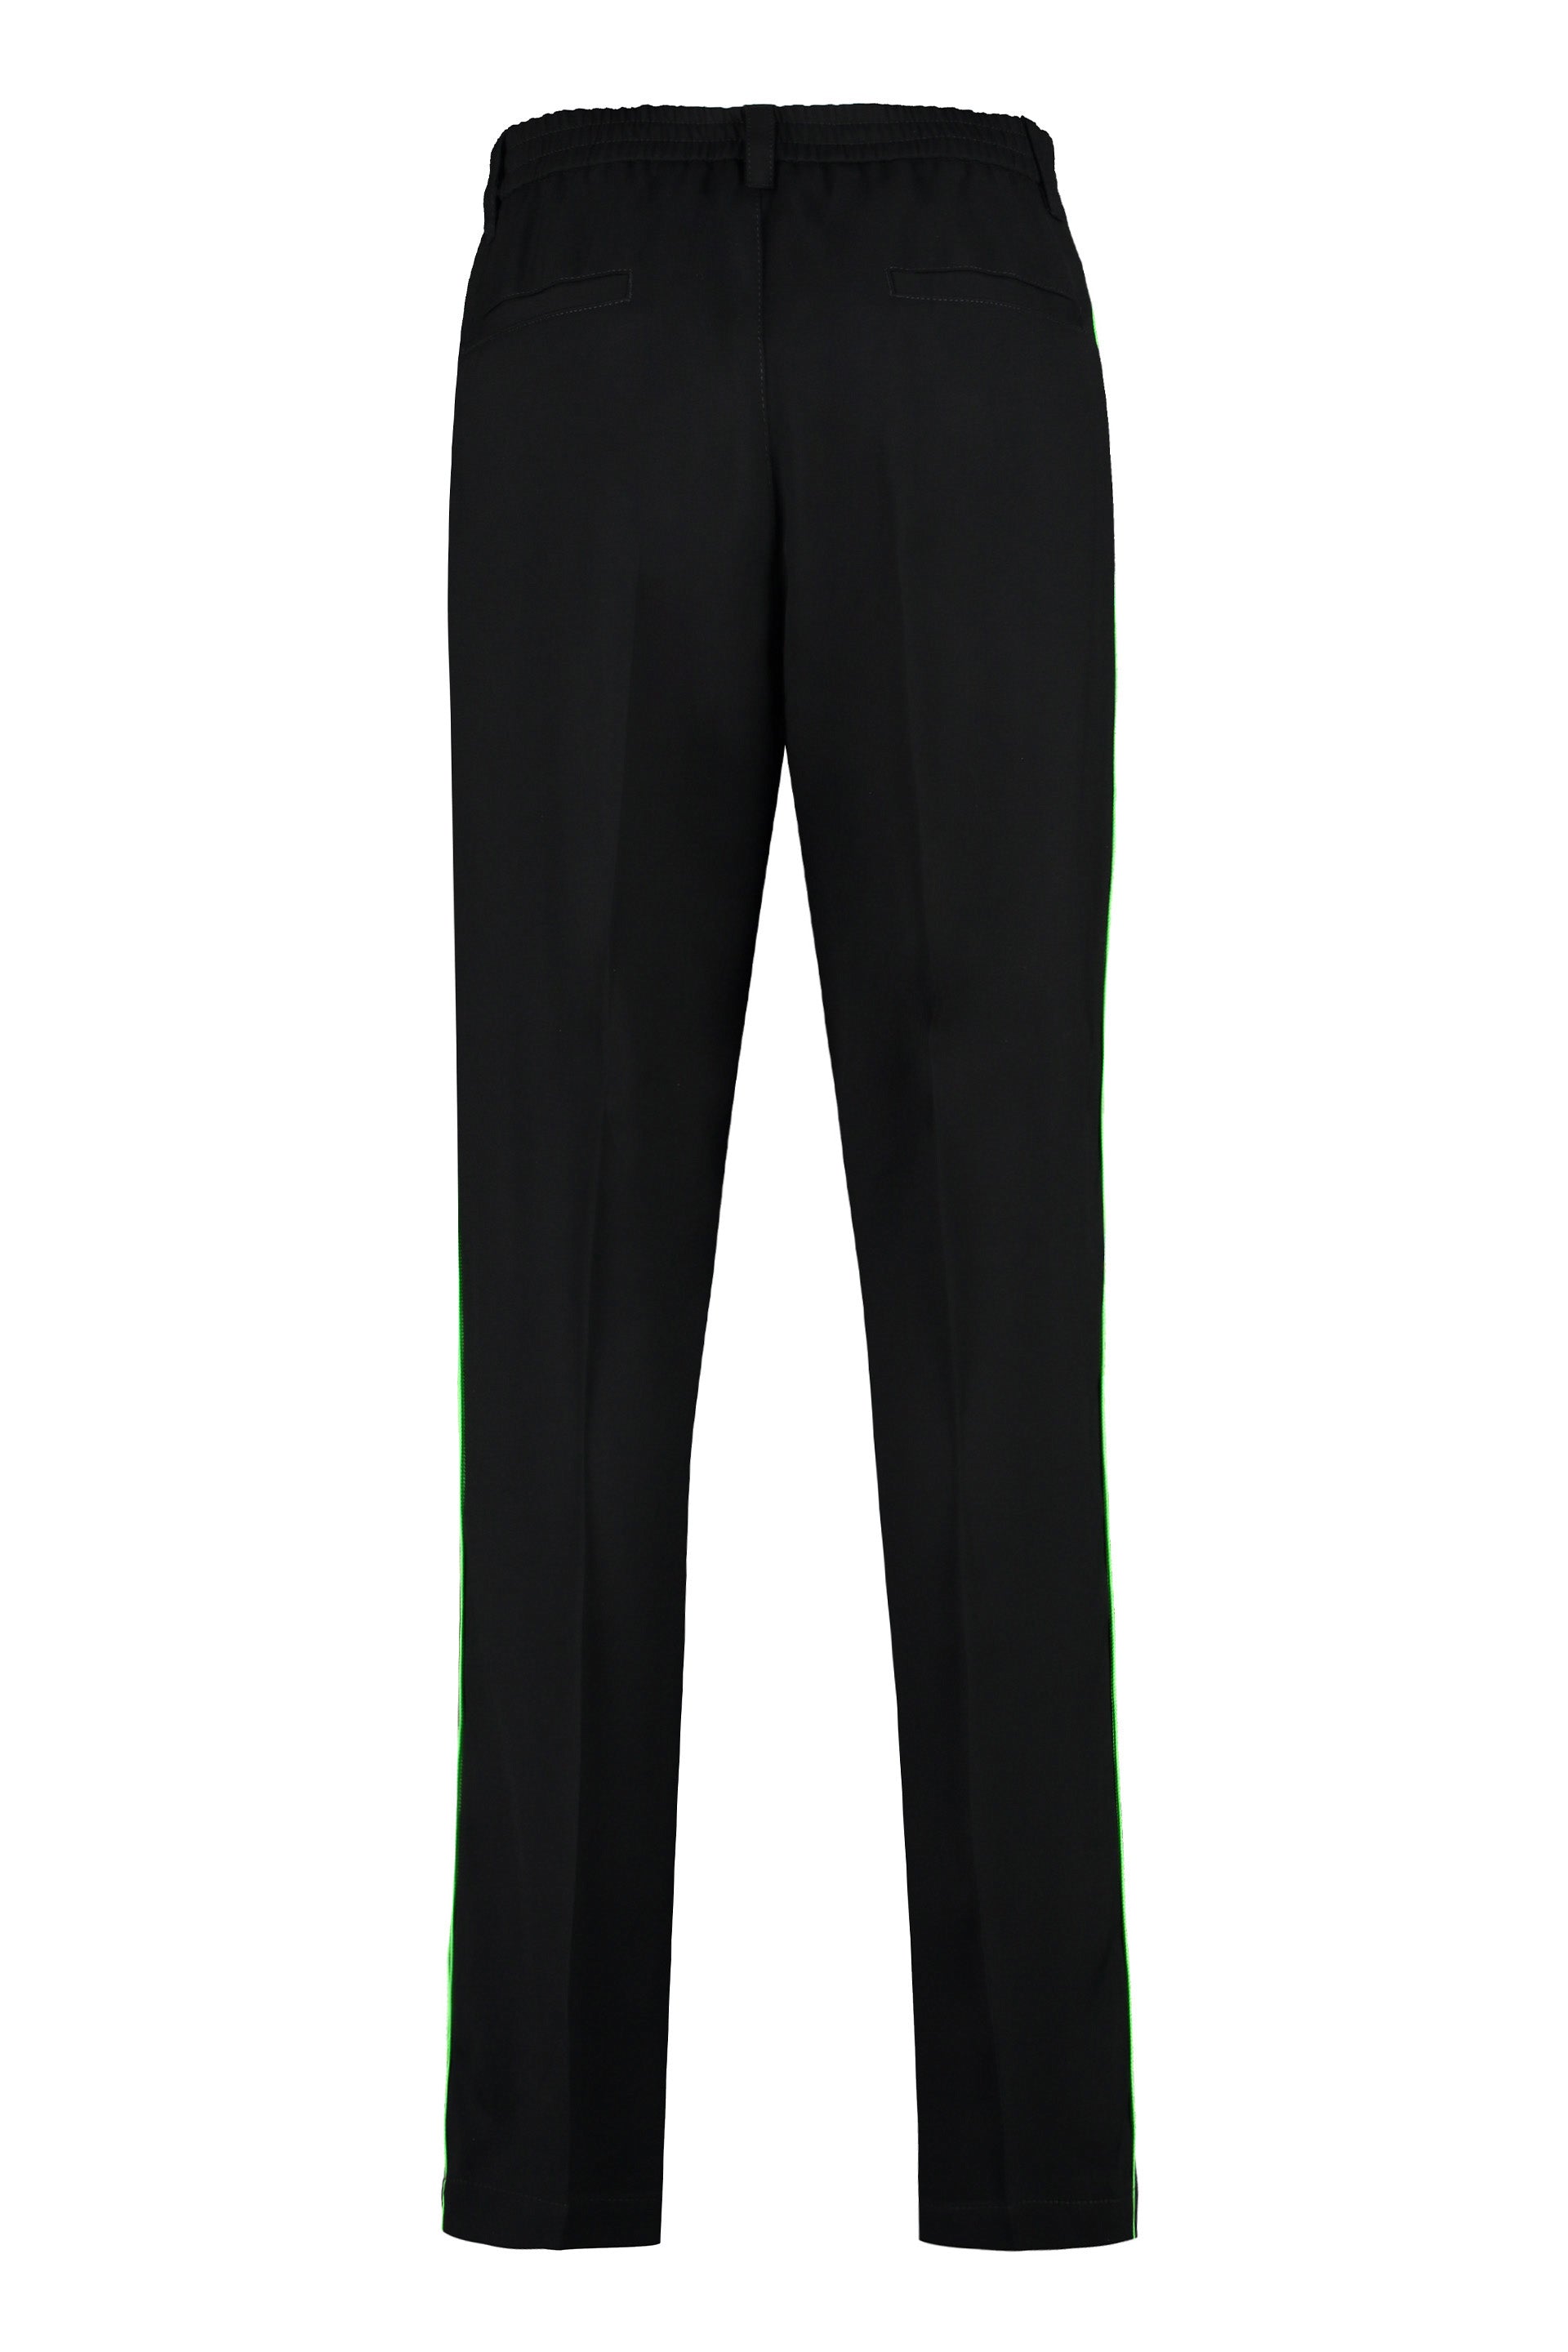 Shop Versace Men's Black Track Pants With  Logoed Side Stripes & Welt Pockets